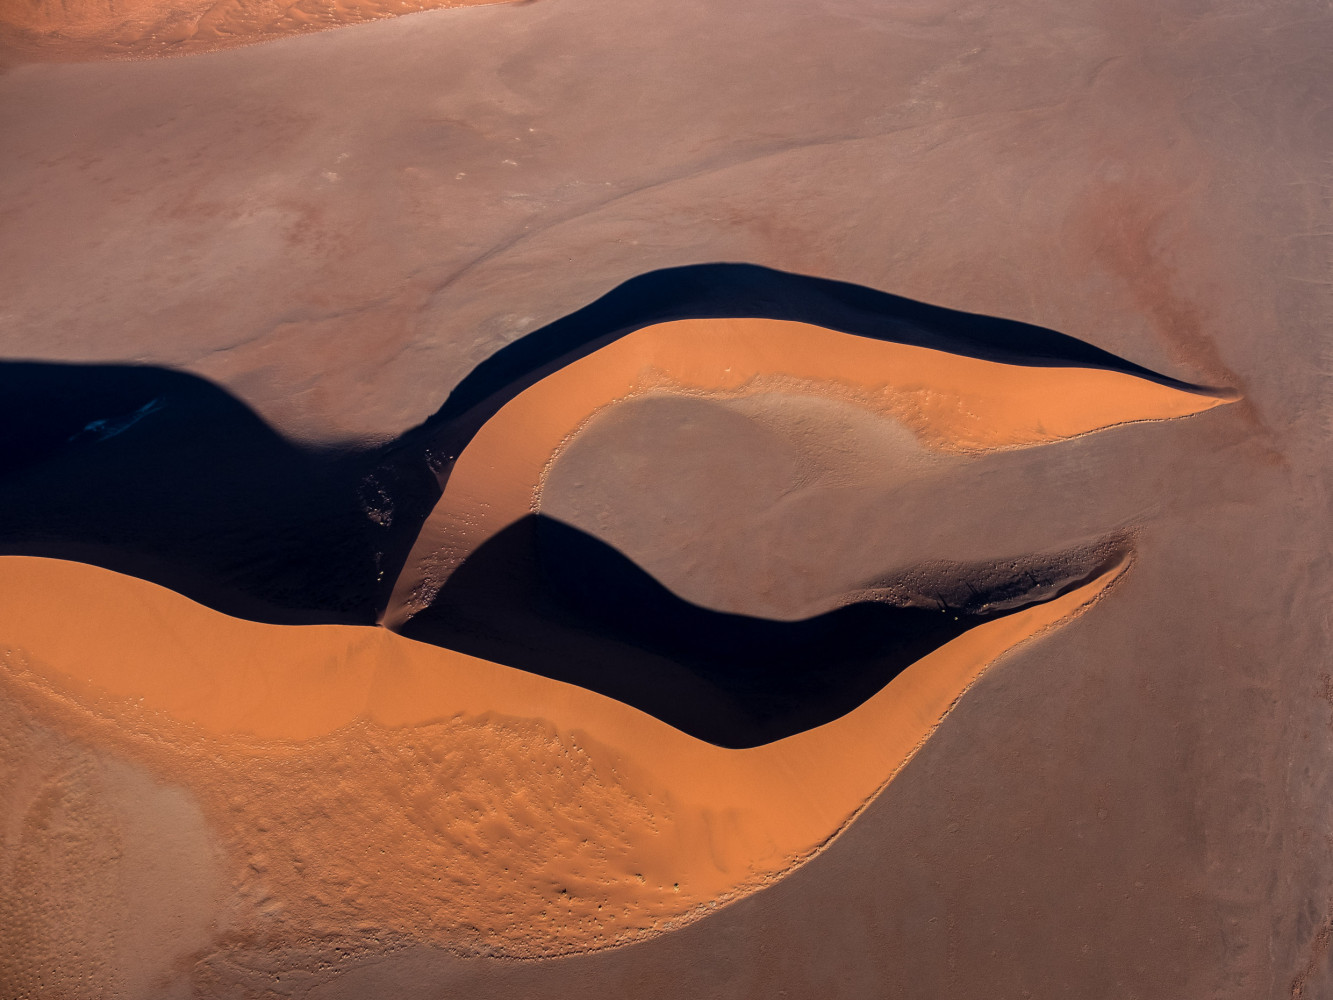 Pustynny pazur – zdjęcie wydmy na pustyni Namib w Namibii wykonane z pokładu samolotu Cessna, 2016 r.